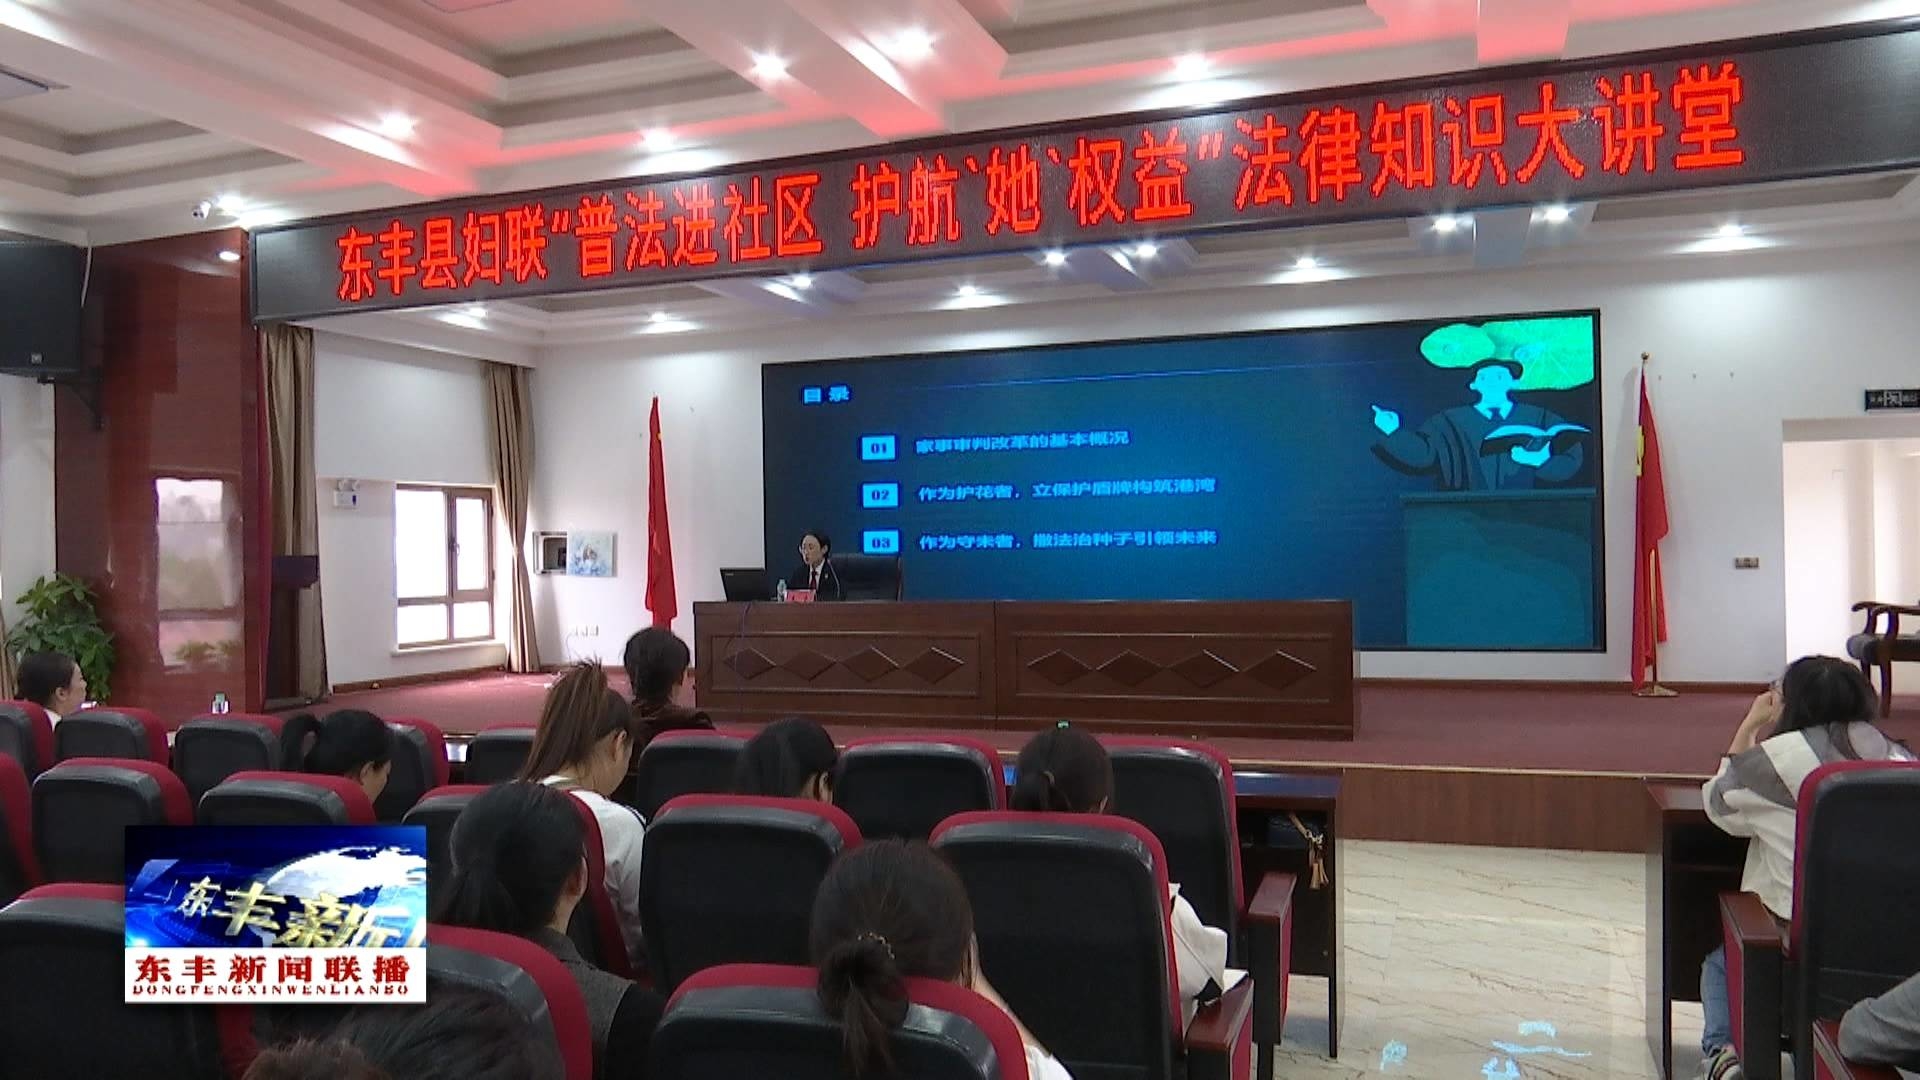 东丰县妇联举办“普法进社区 护航‘她’权益”法律知识大讲堂